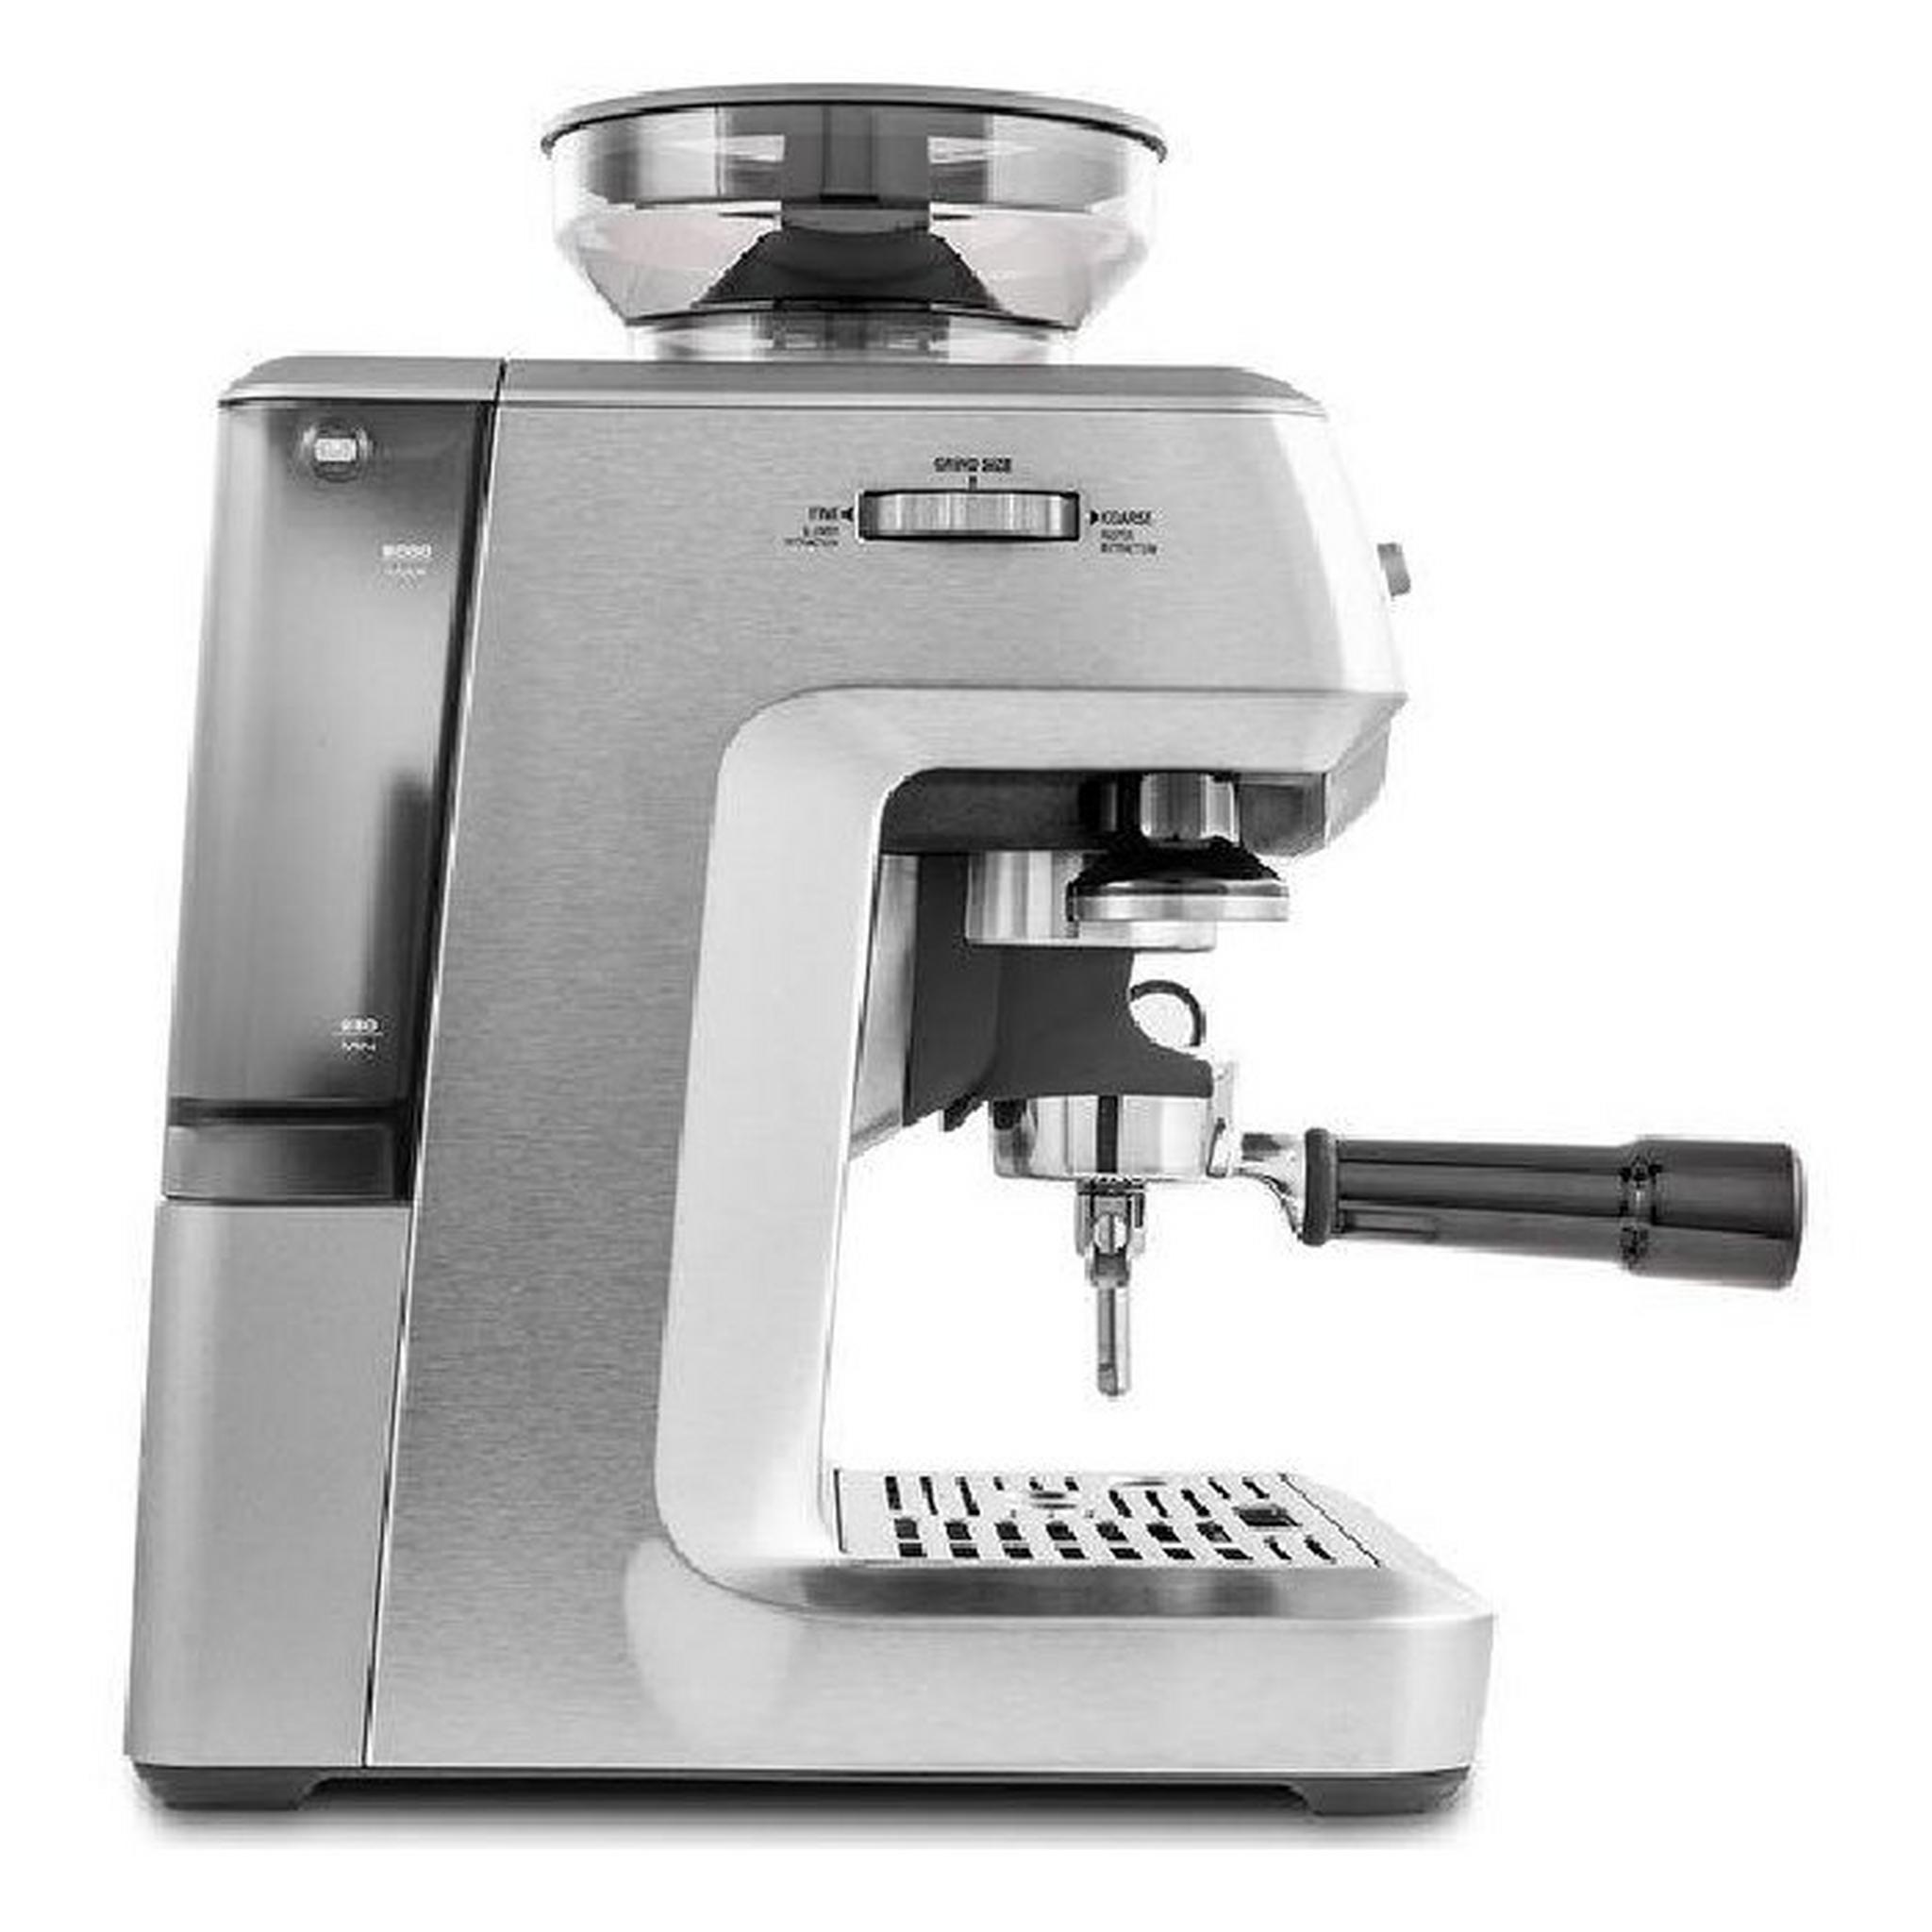 ماكينة صنع القهوة باريستا اكسبرس من سيج، قوة 1850 واط، بسعة 2 لتر، SES875BSS - ستانلس ستيل